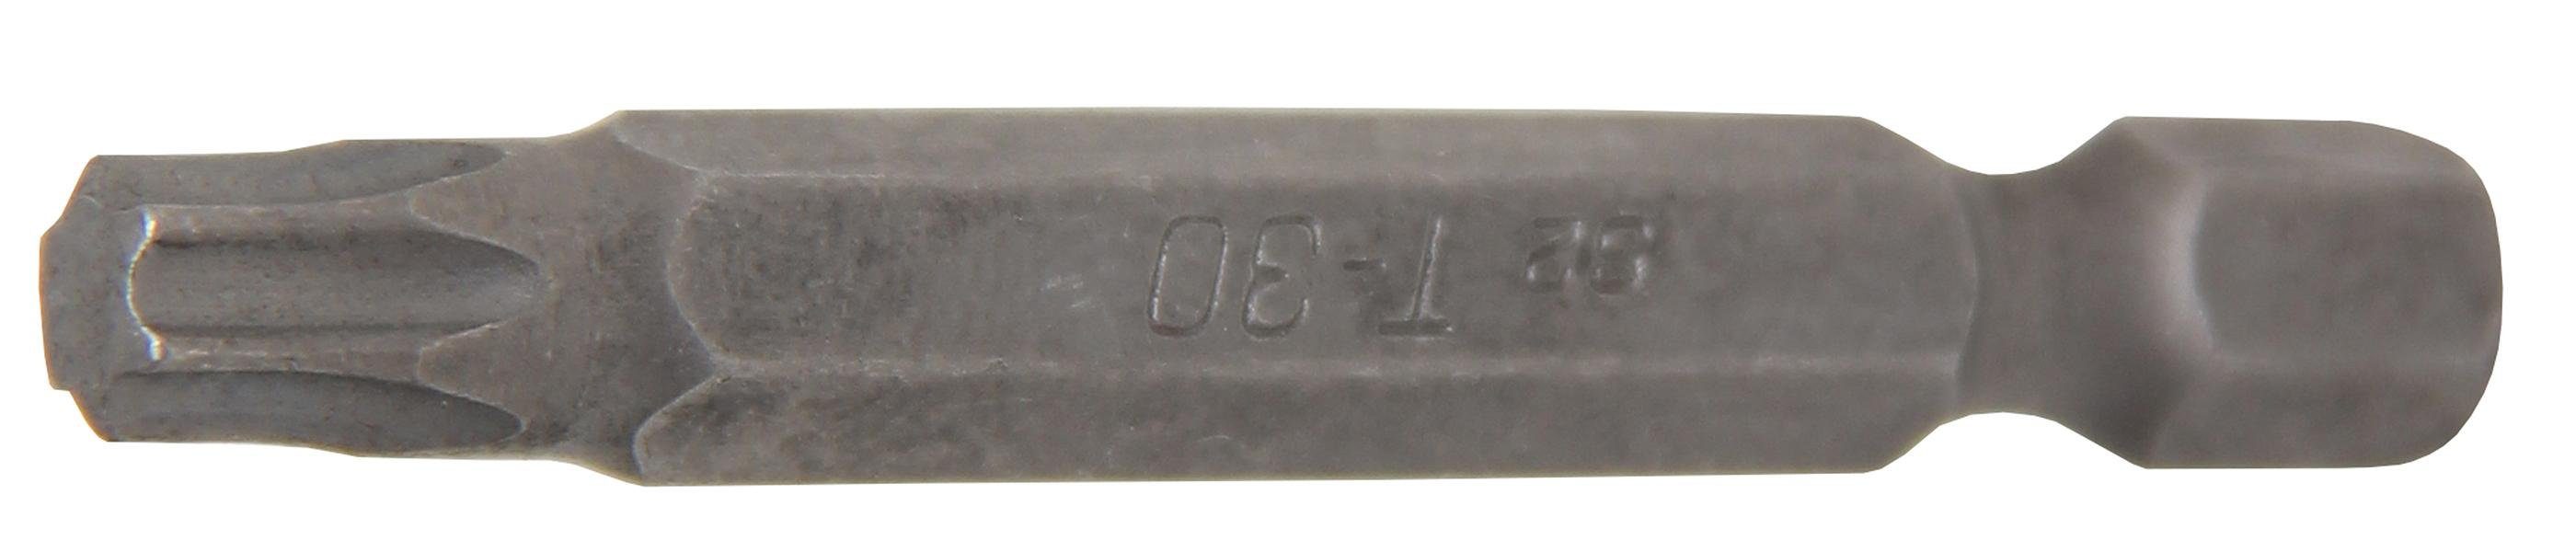 BGS technic Bit-Schraubendreher Bit, Länge 50 mm, Antrieb Außensechskant 6,3 mm (1/4), T-Profil (für Torx) T30